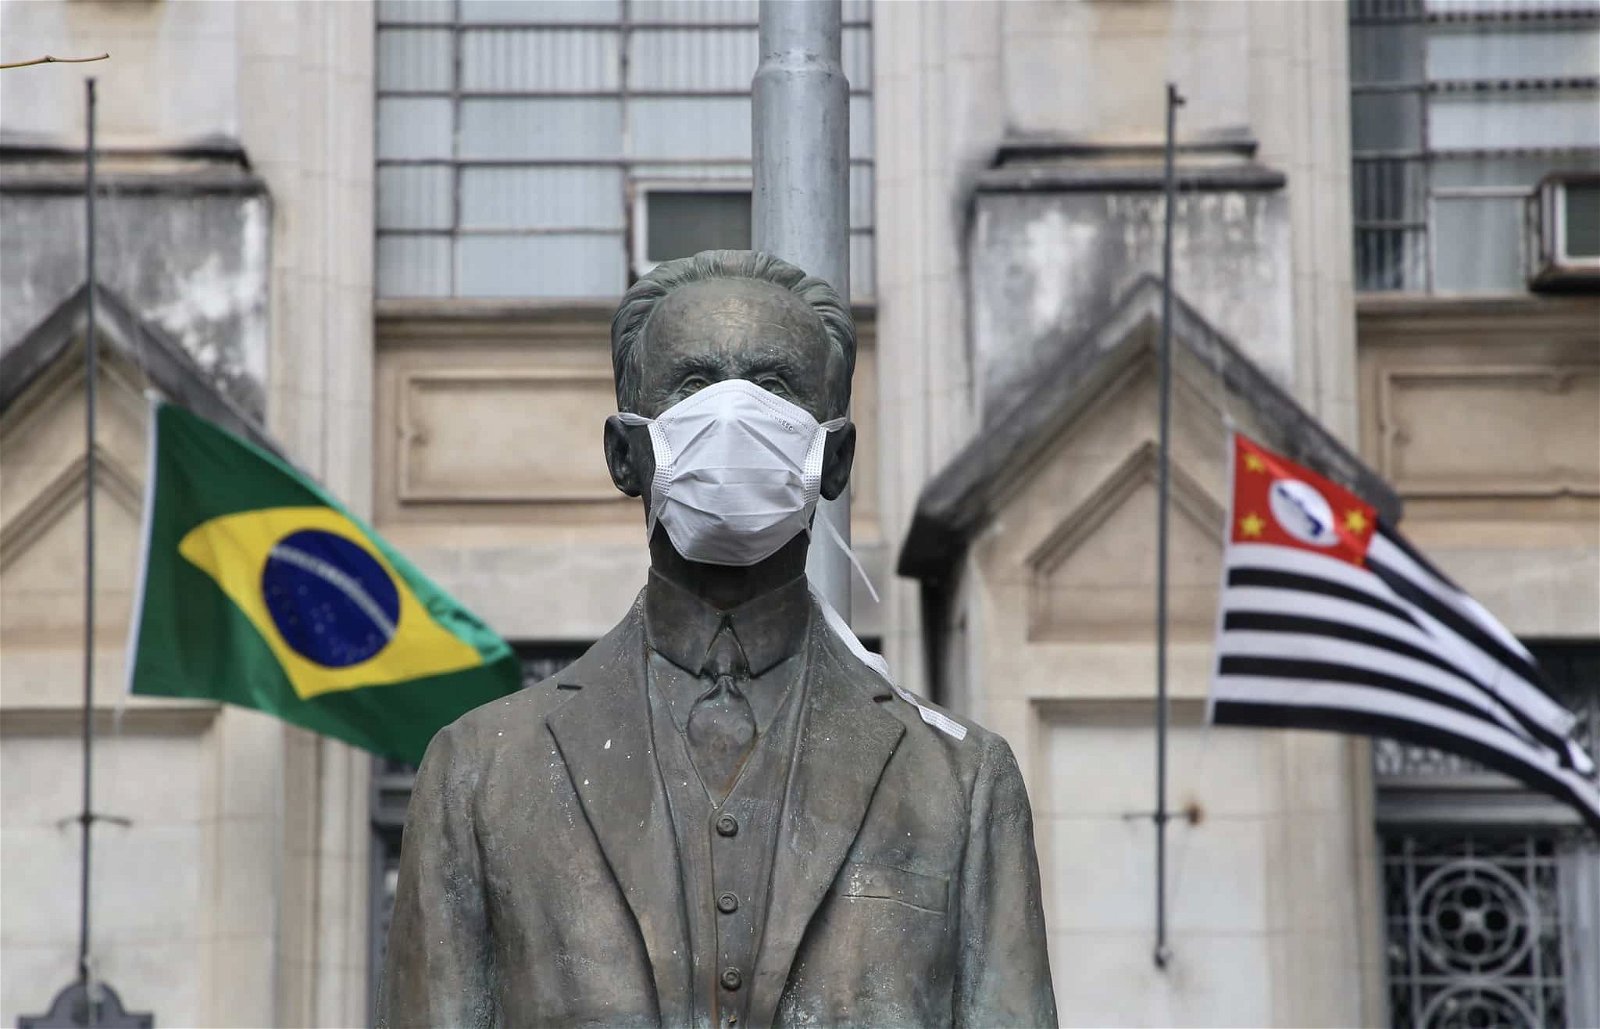 Fachada do Instituto Butantan com estátua usando máscara, tendo atrás as bandeiras do Brasil e do Estado de São Paulo